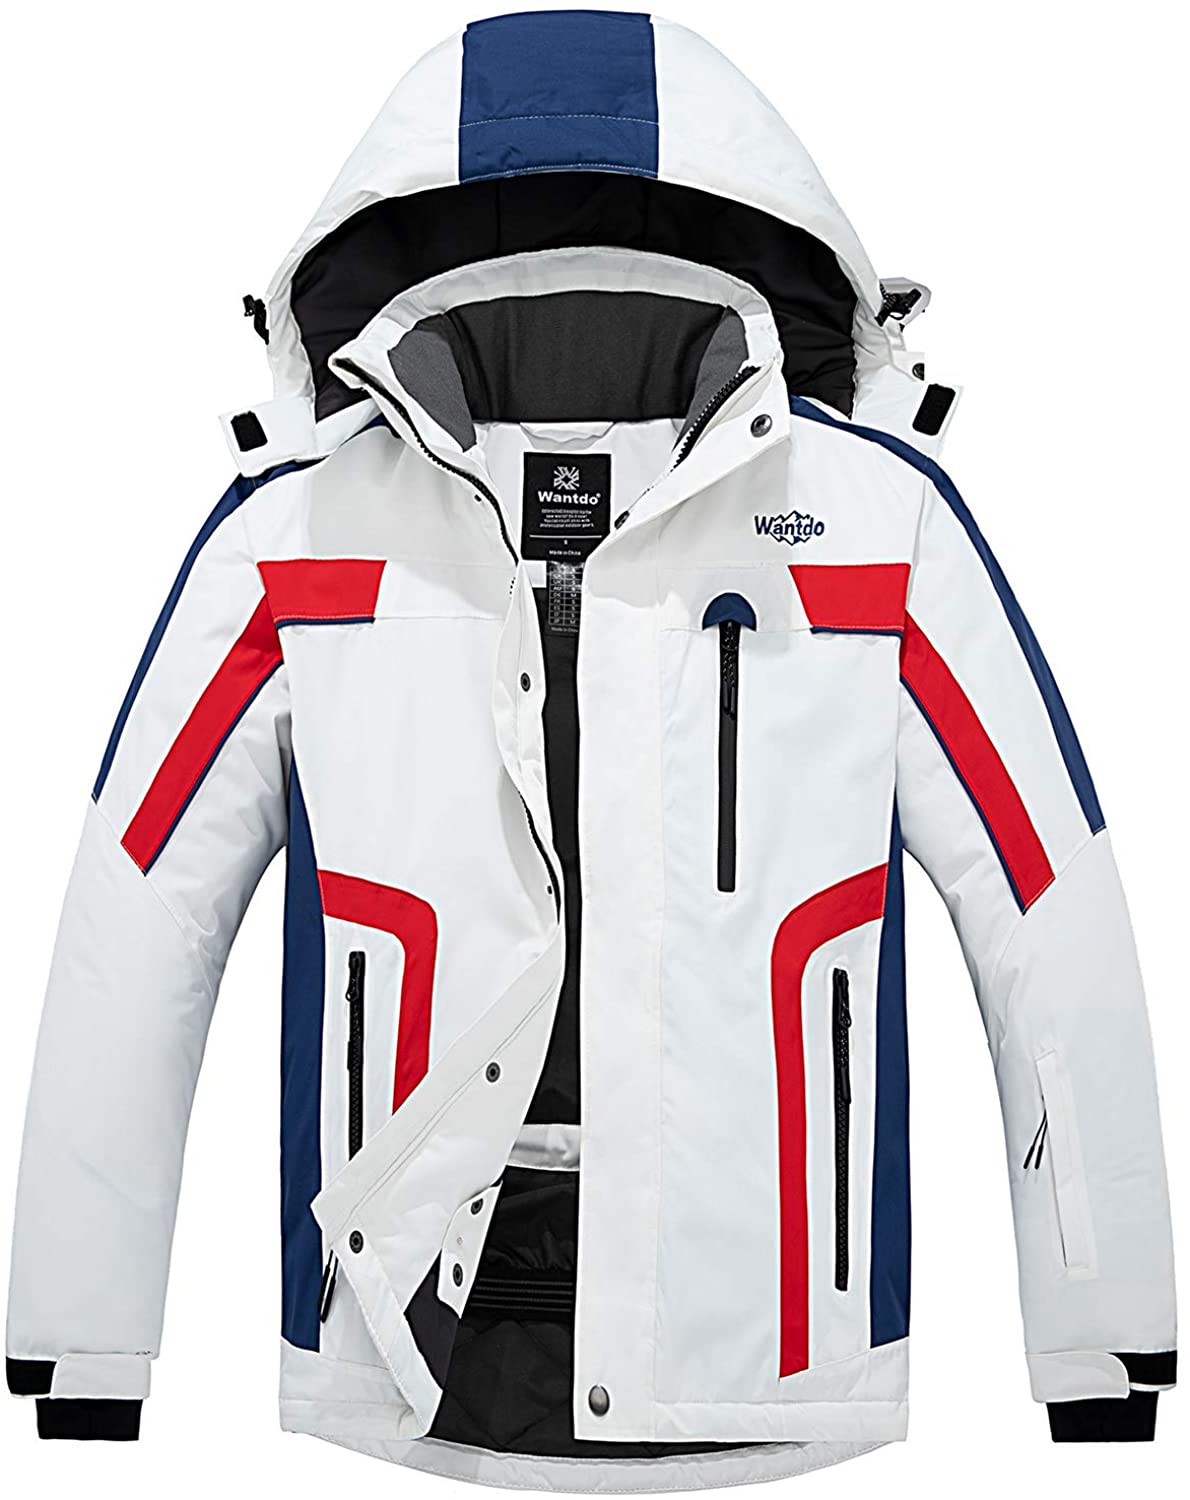 Wantdo Mens Waterproof Ski Jacket Warm Winter Snow Coat Windbreaker Hooded Rain Jacket